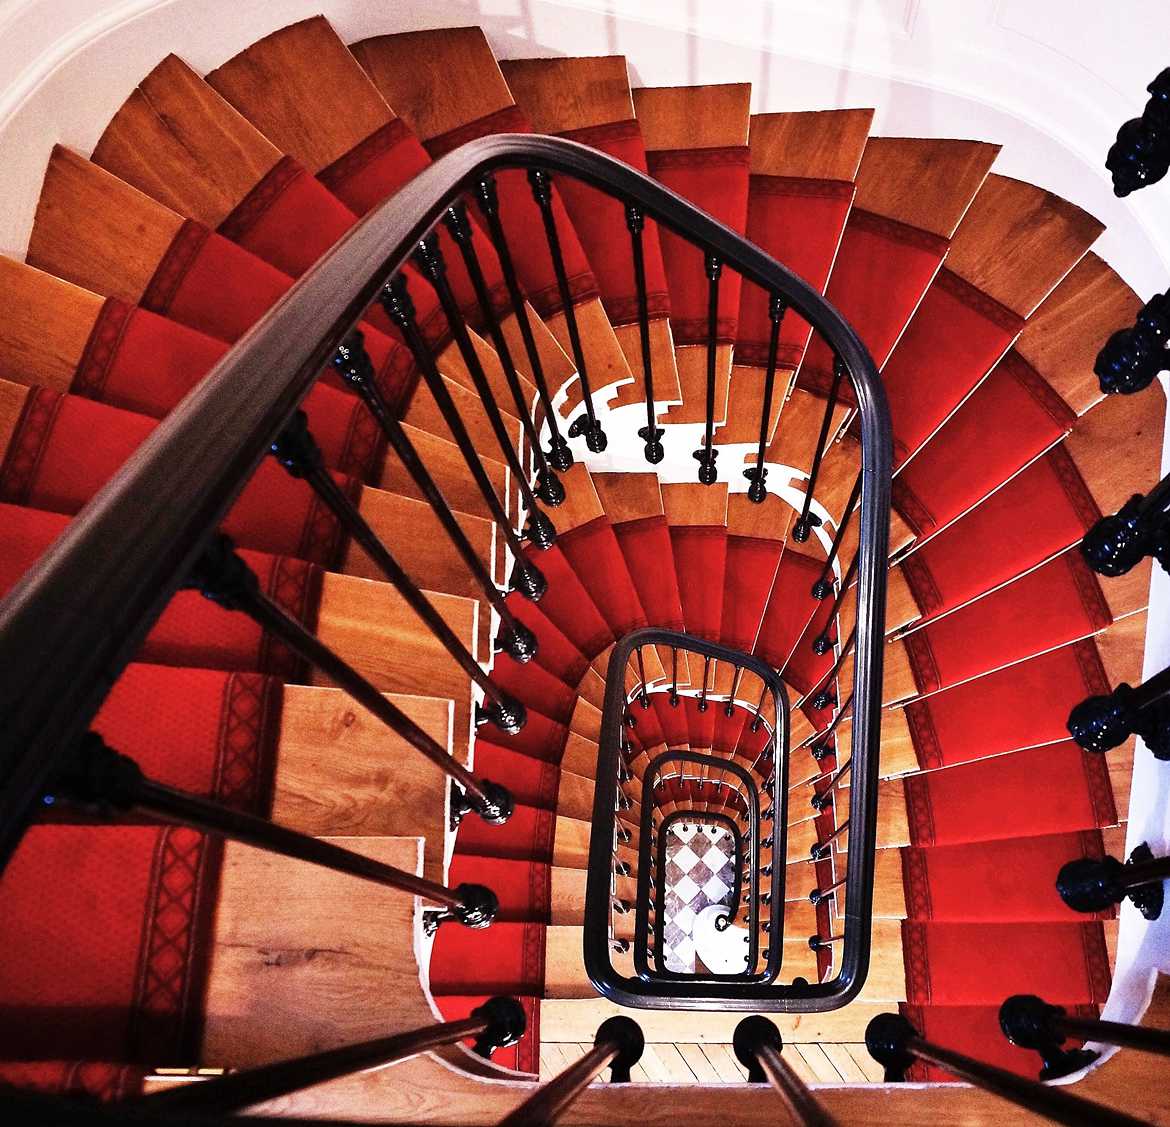 Concours Photo - Escaliers - Escalier par Vera_paris